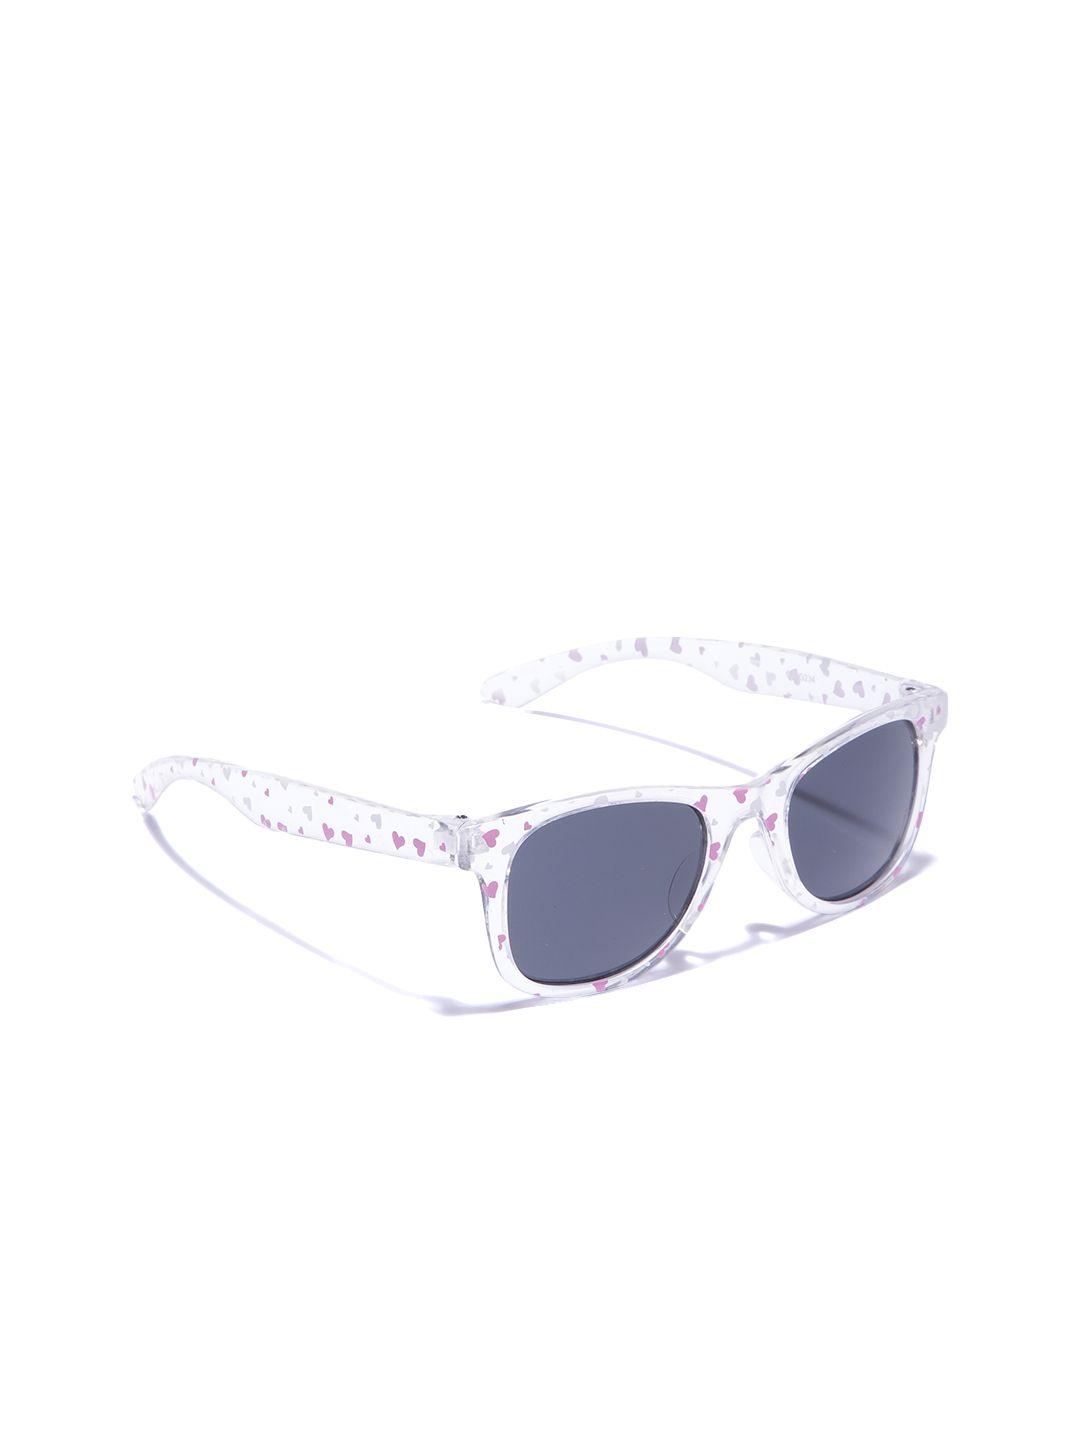 carlton london girls grey lens & white wayfarer sunglasses with uv protected lens clsg234